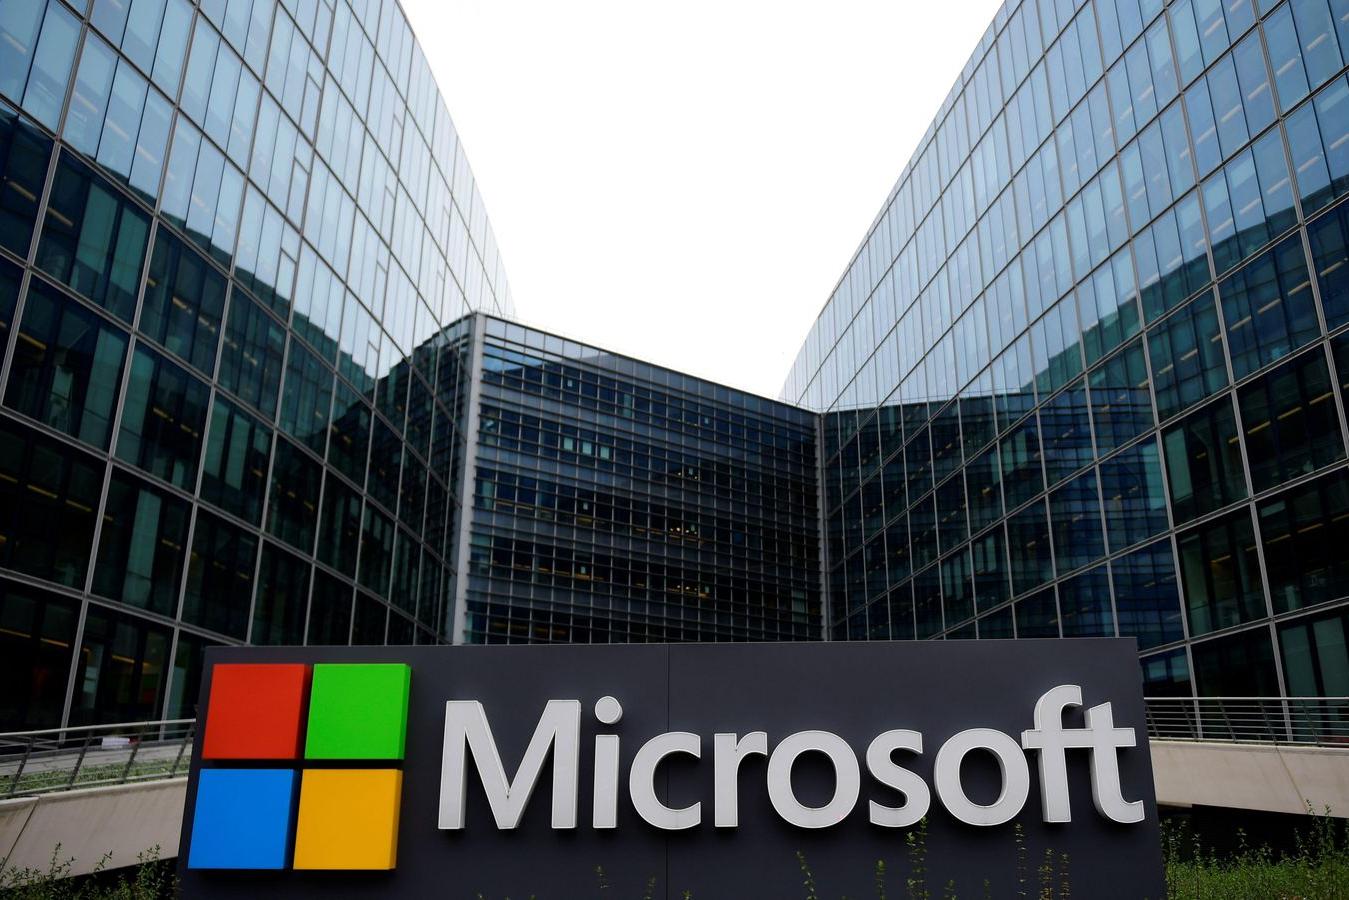  Во избежание скандалов: компания Microsoft запретила сотрудникам шутить 1 апреля